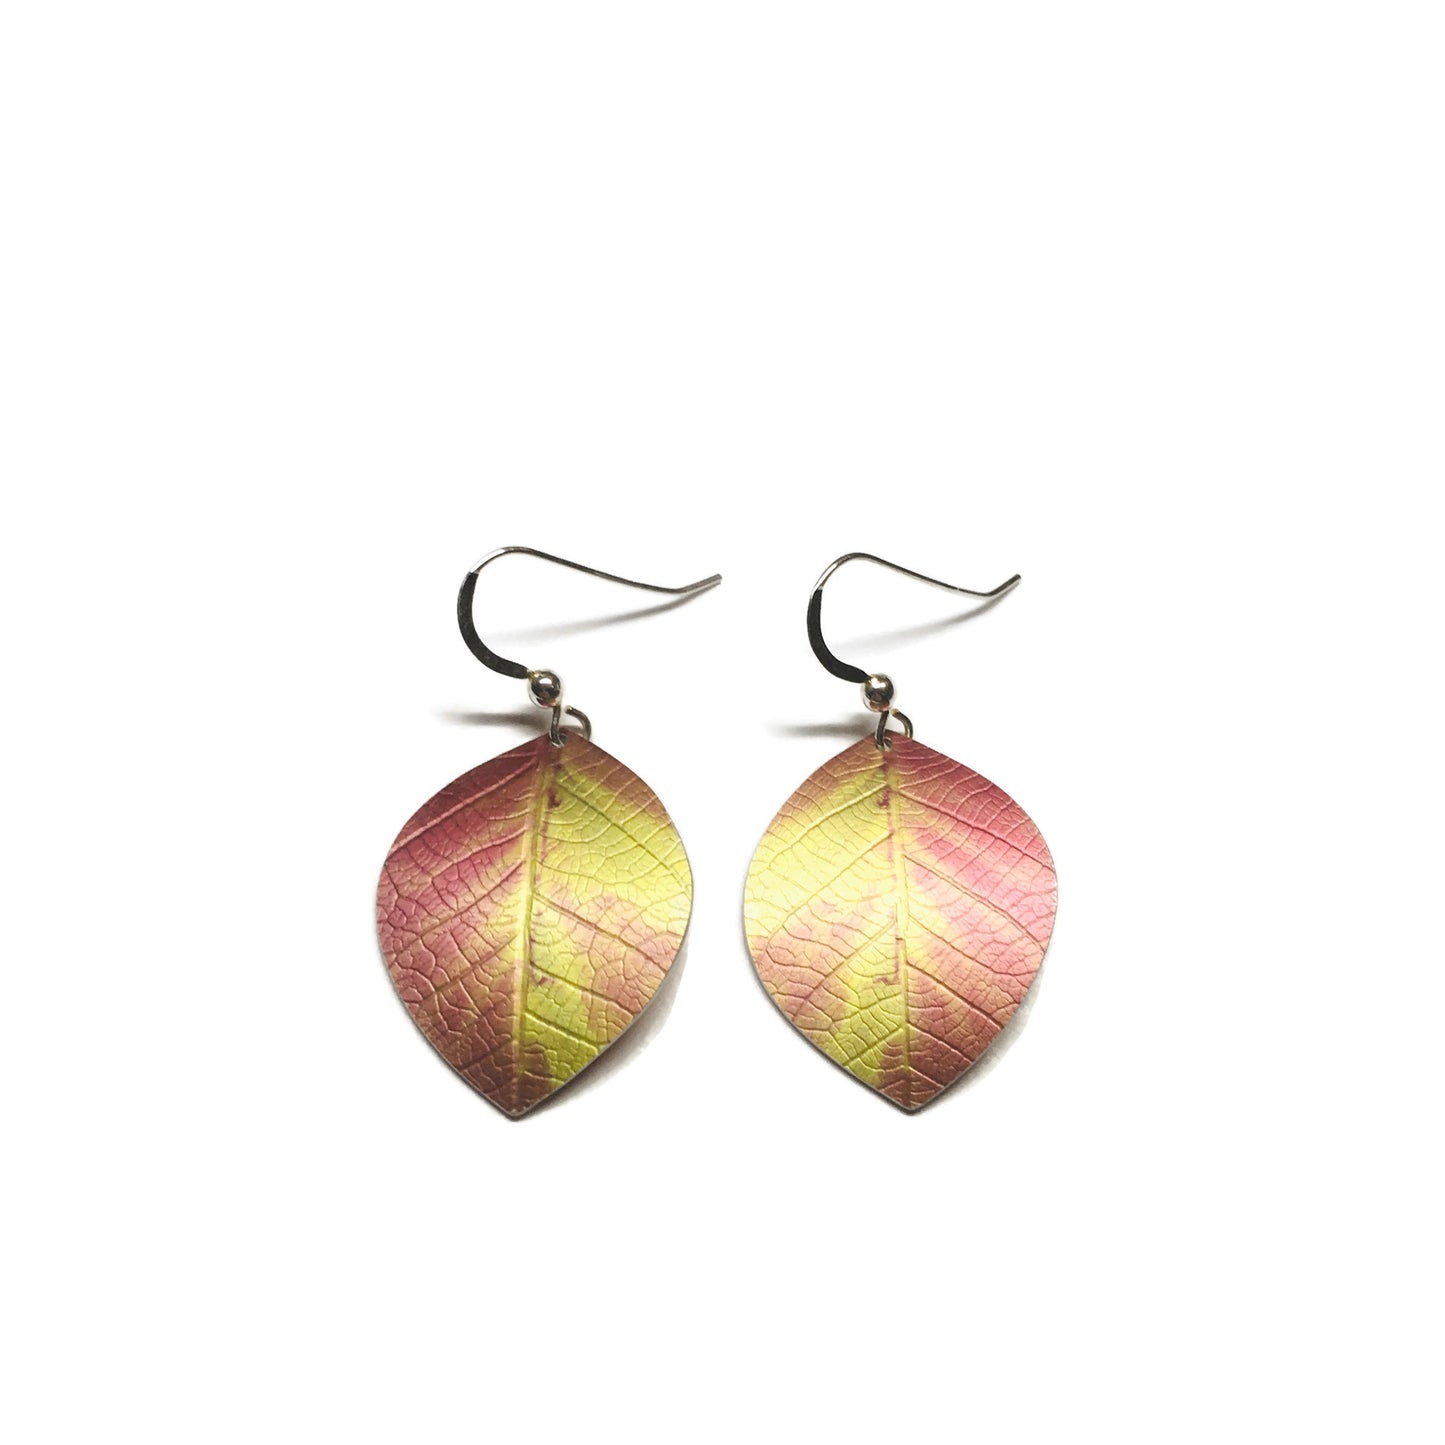 Beech leaf miner earrings